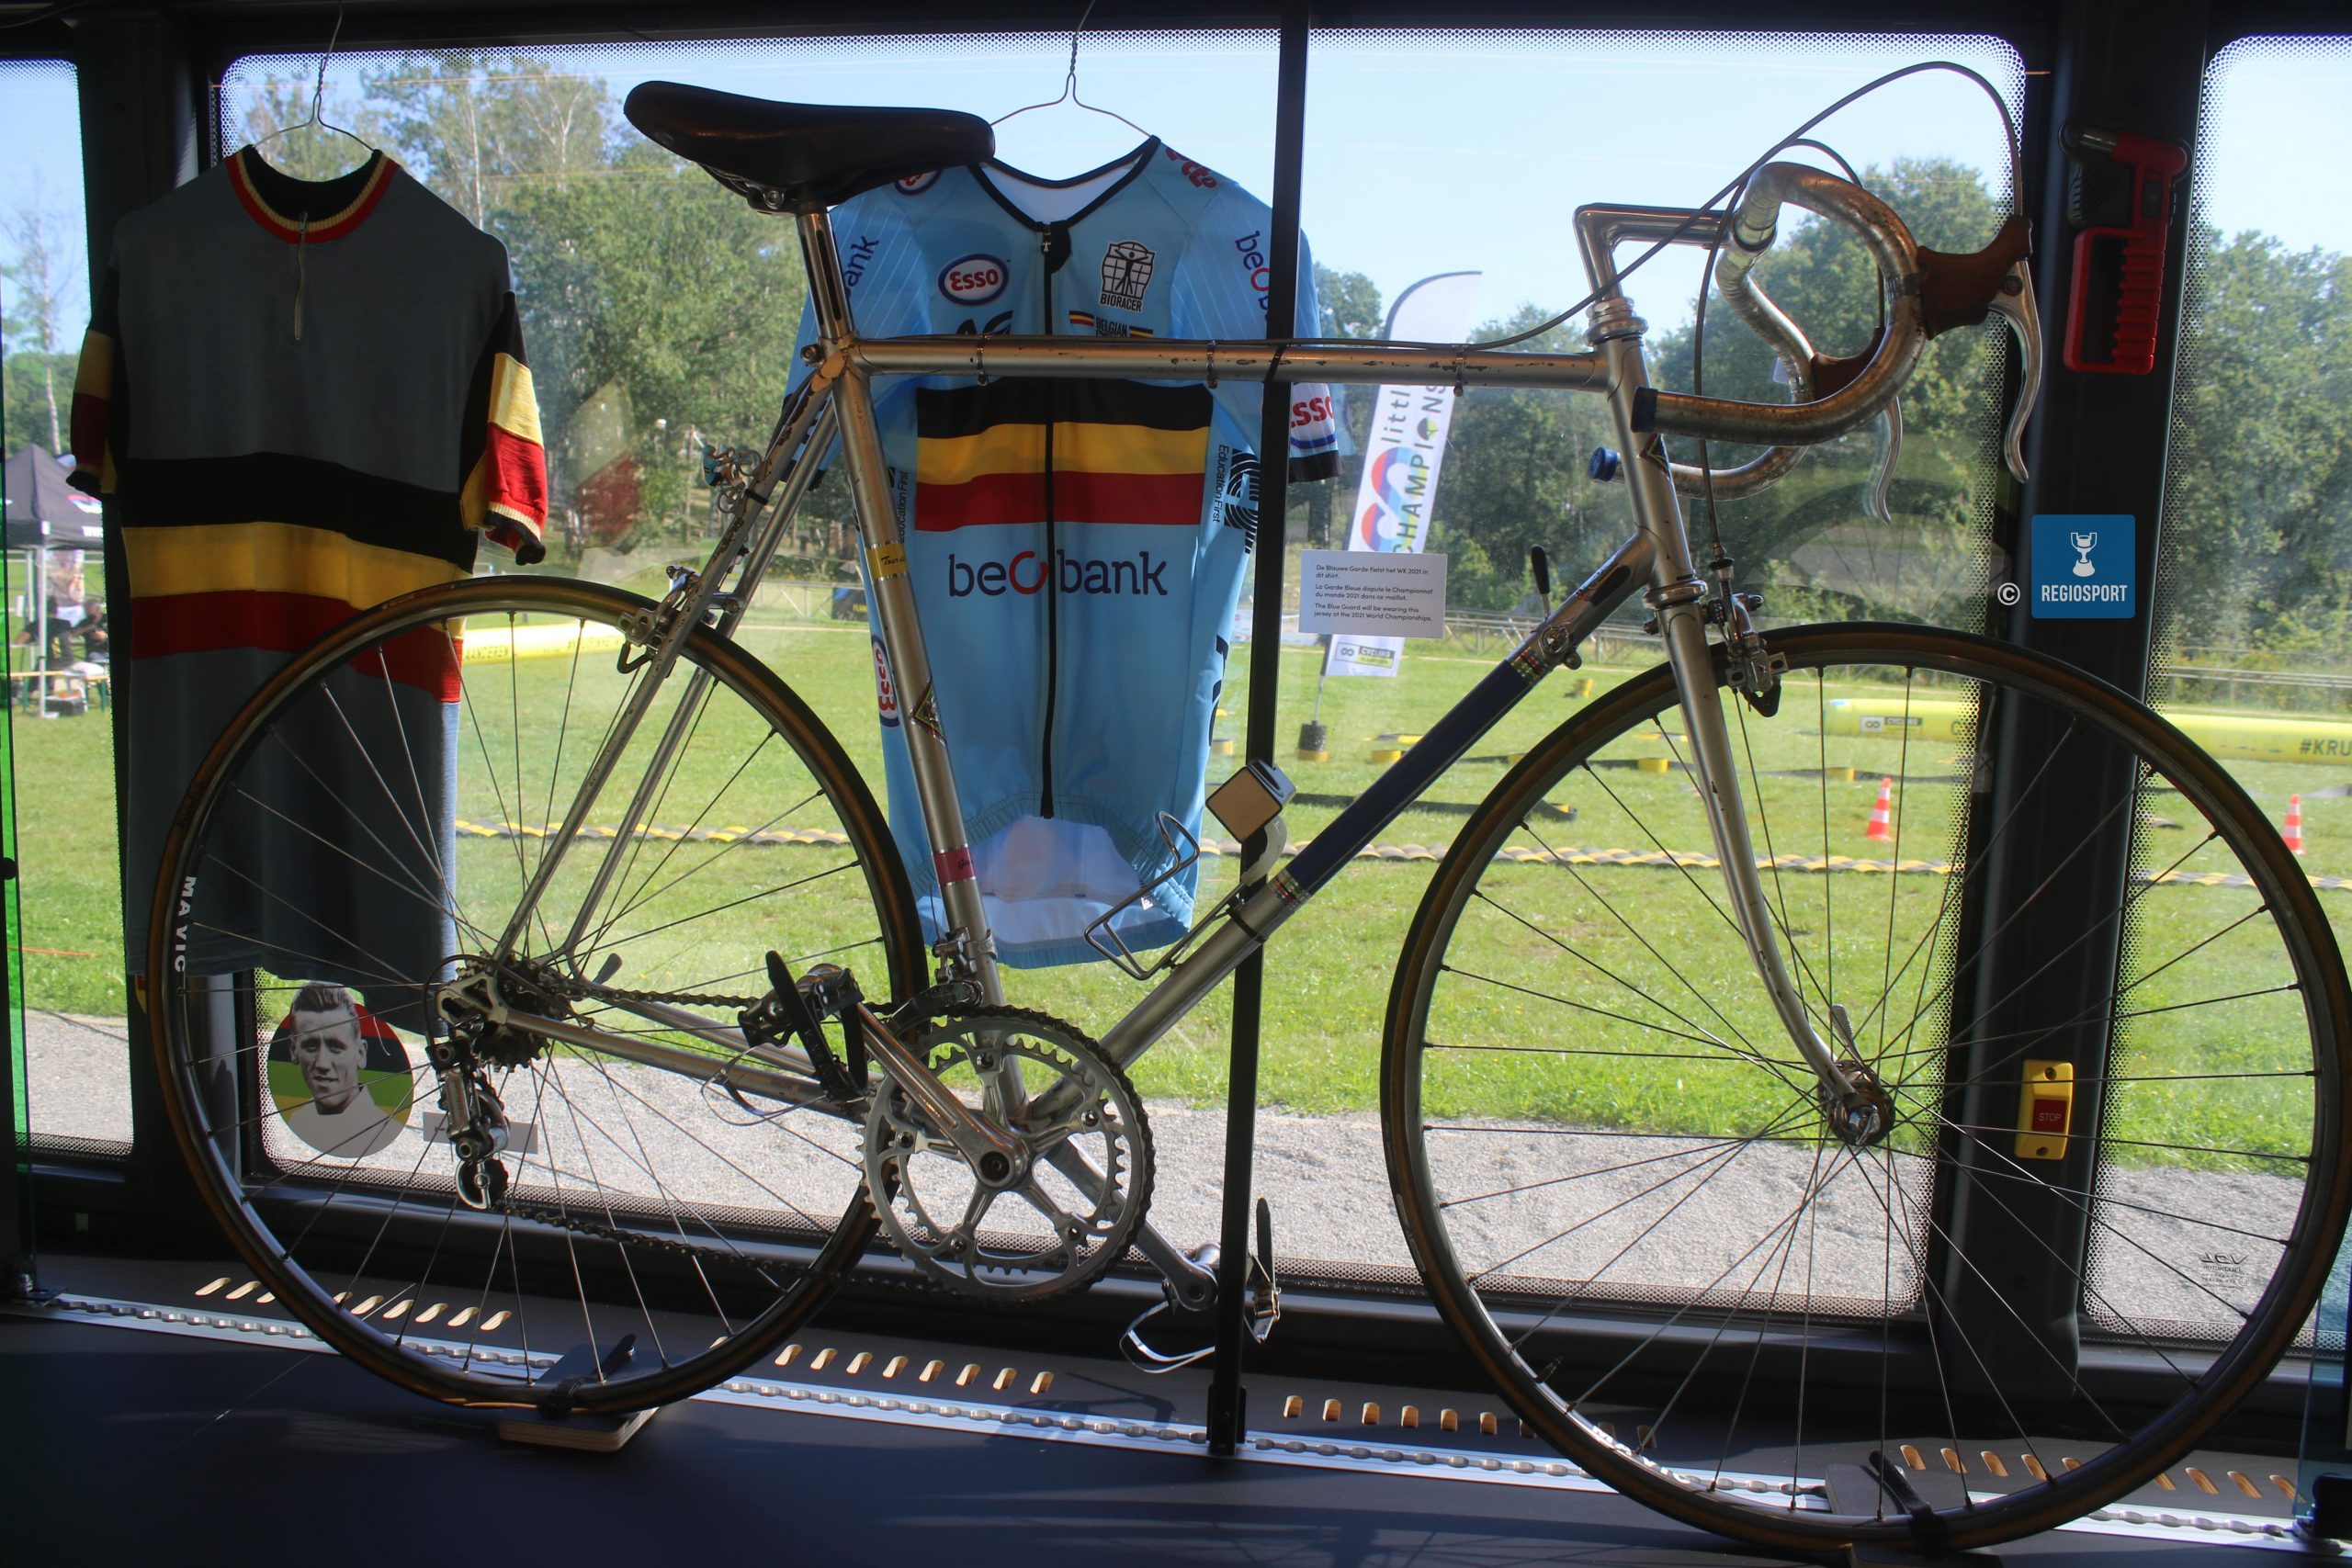 Achter een fiets van Eddy Merckx het tenue waar de WK-Belgen in september mee zullen rijden